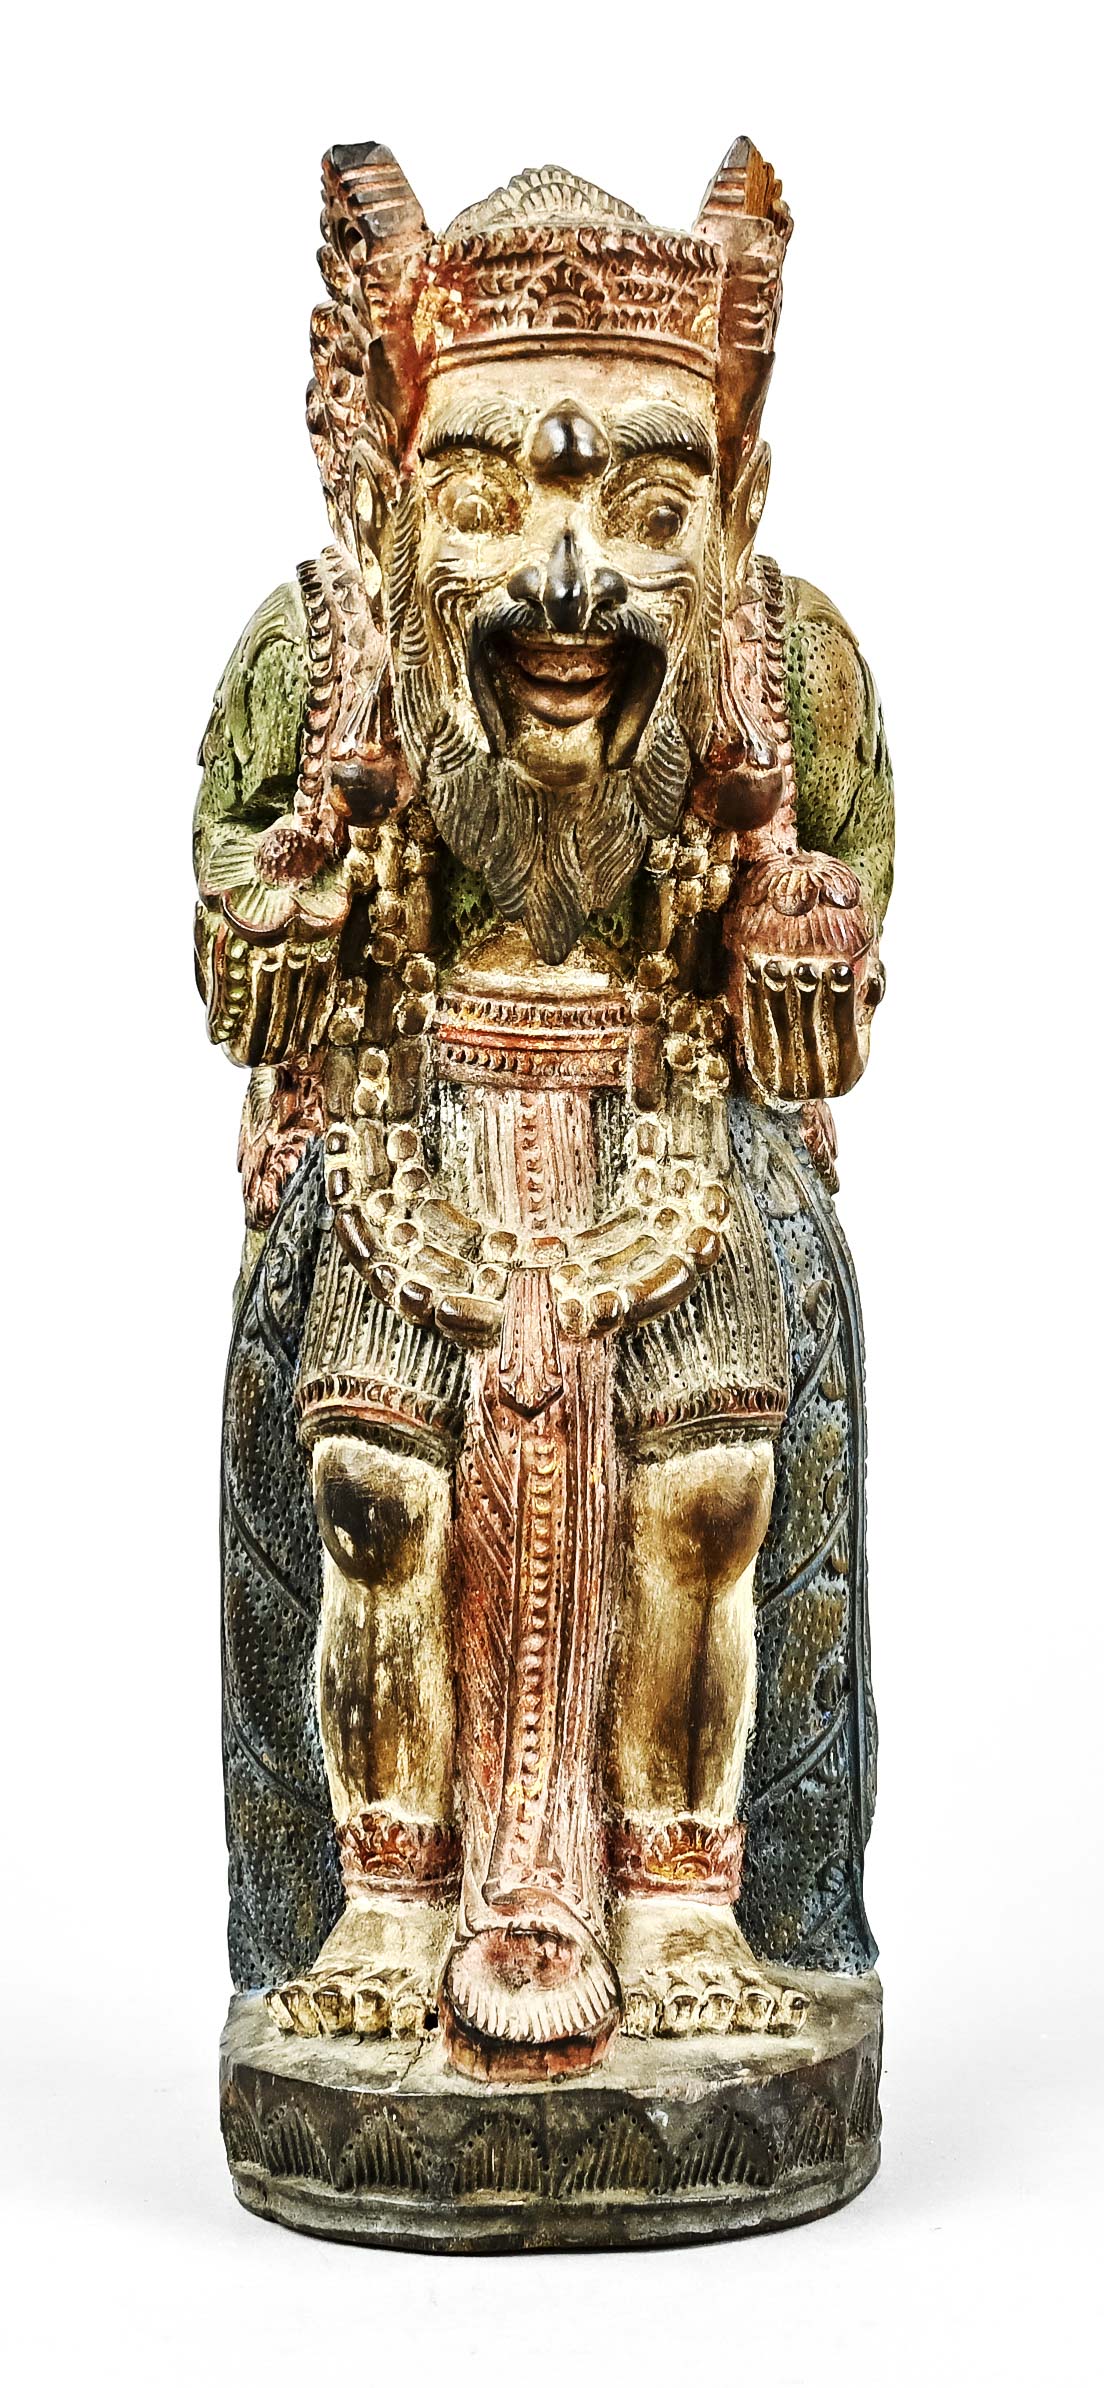 Indonesische Holzfigur, farbig gefasst, Höhe 28,5 cm, Sockel Dm 13 cm, Kopfbedeckung beschädigt - Bild 2 aus 5